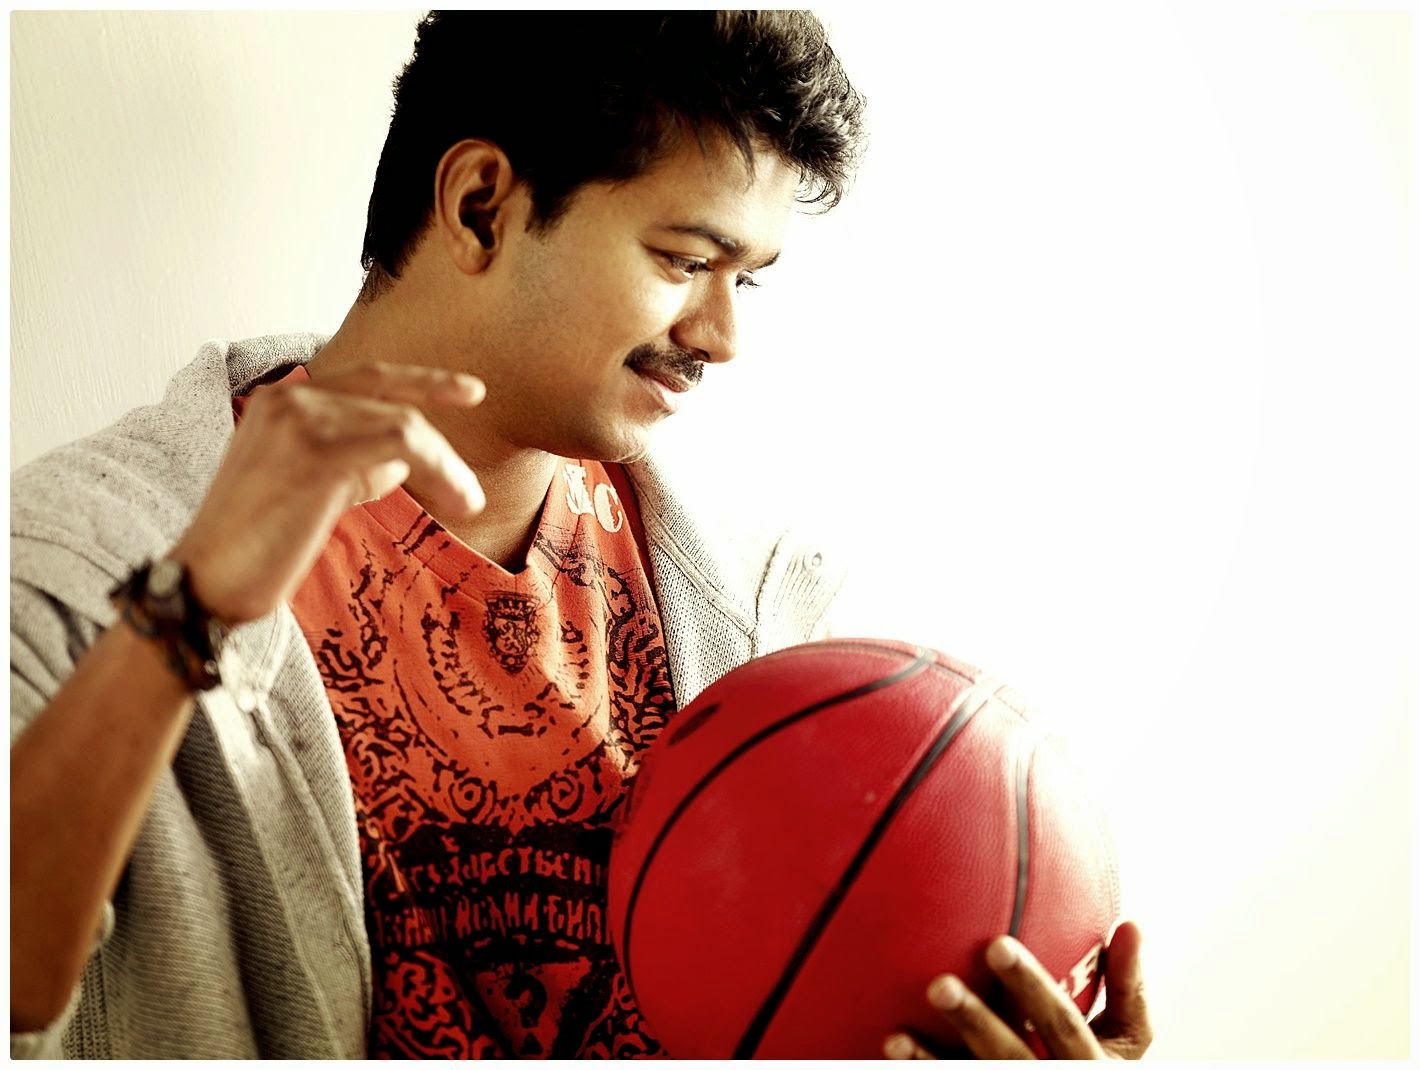 ilayathalapathy vijay hdの壁紙,バスケットボール選手,バスケットボール,バスケットボール